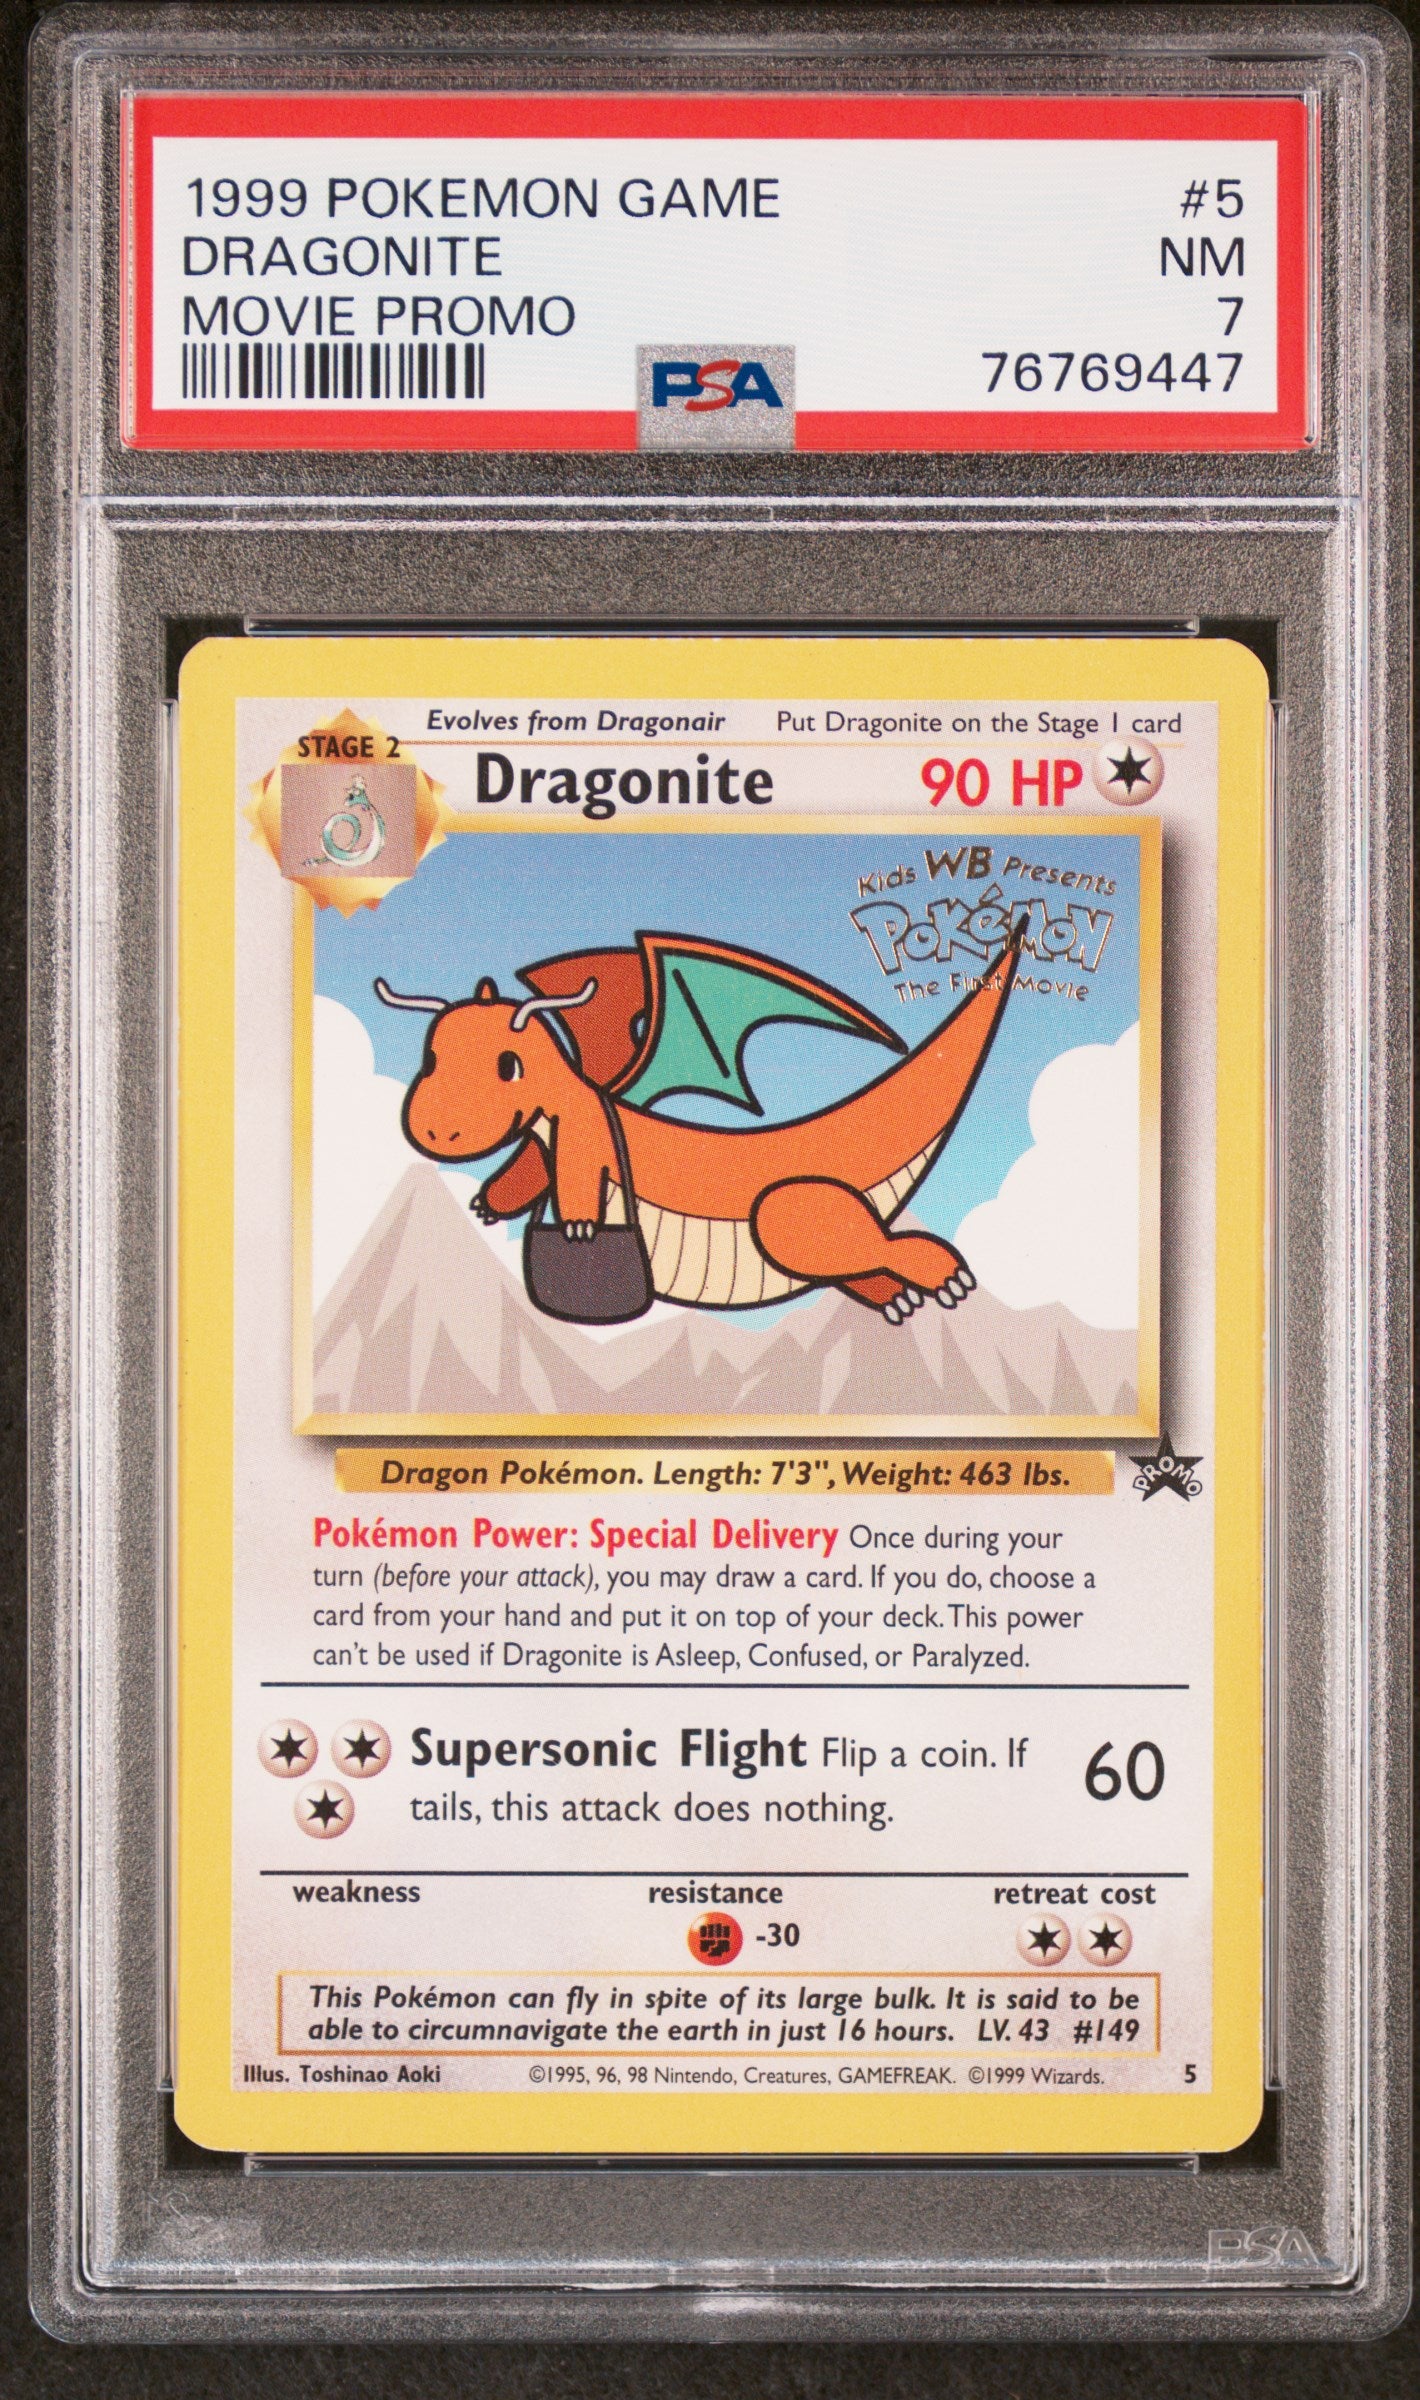 PSA 7 Dragonite Movie Promo (Graded Card)